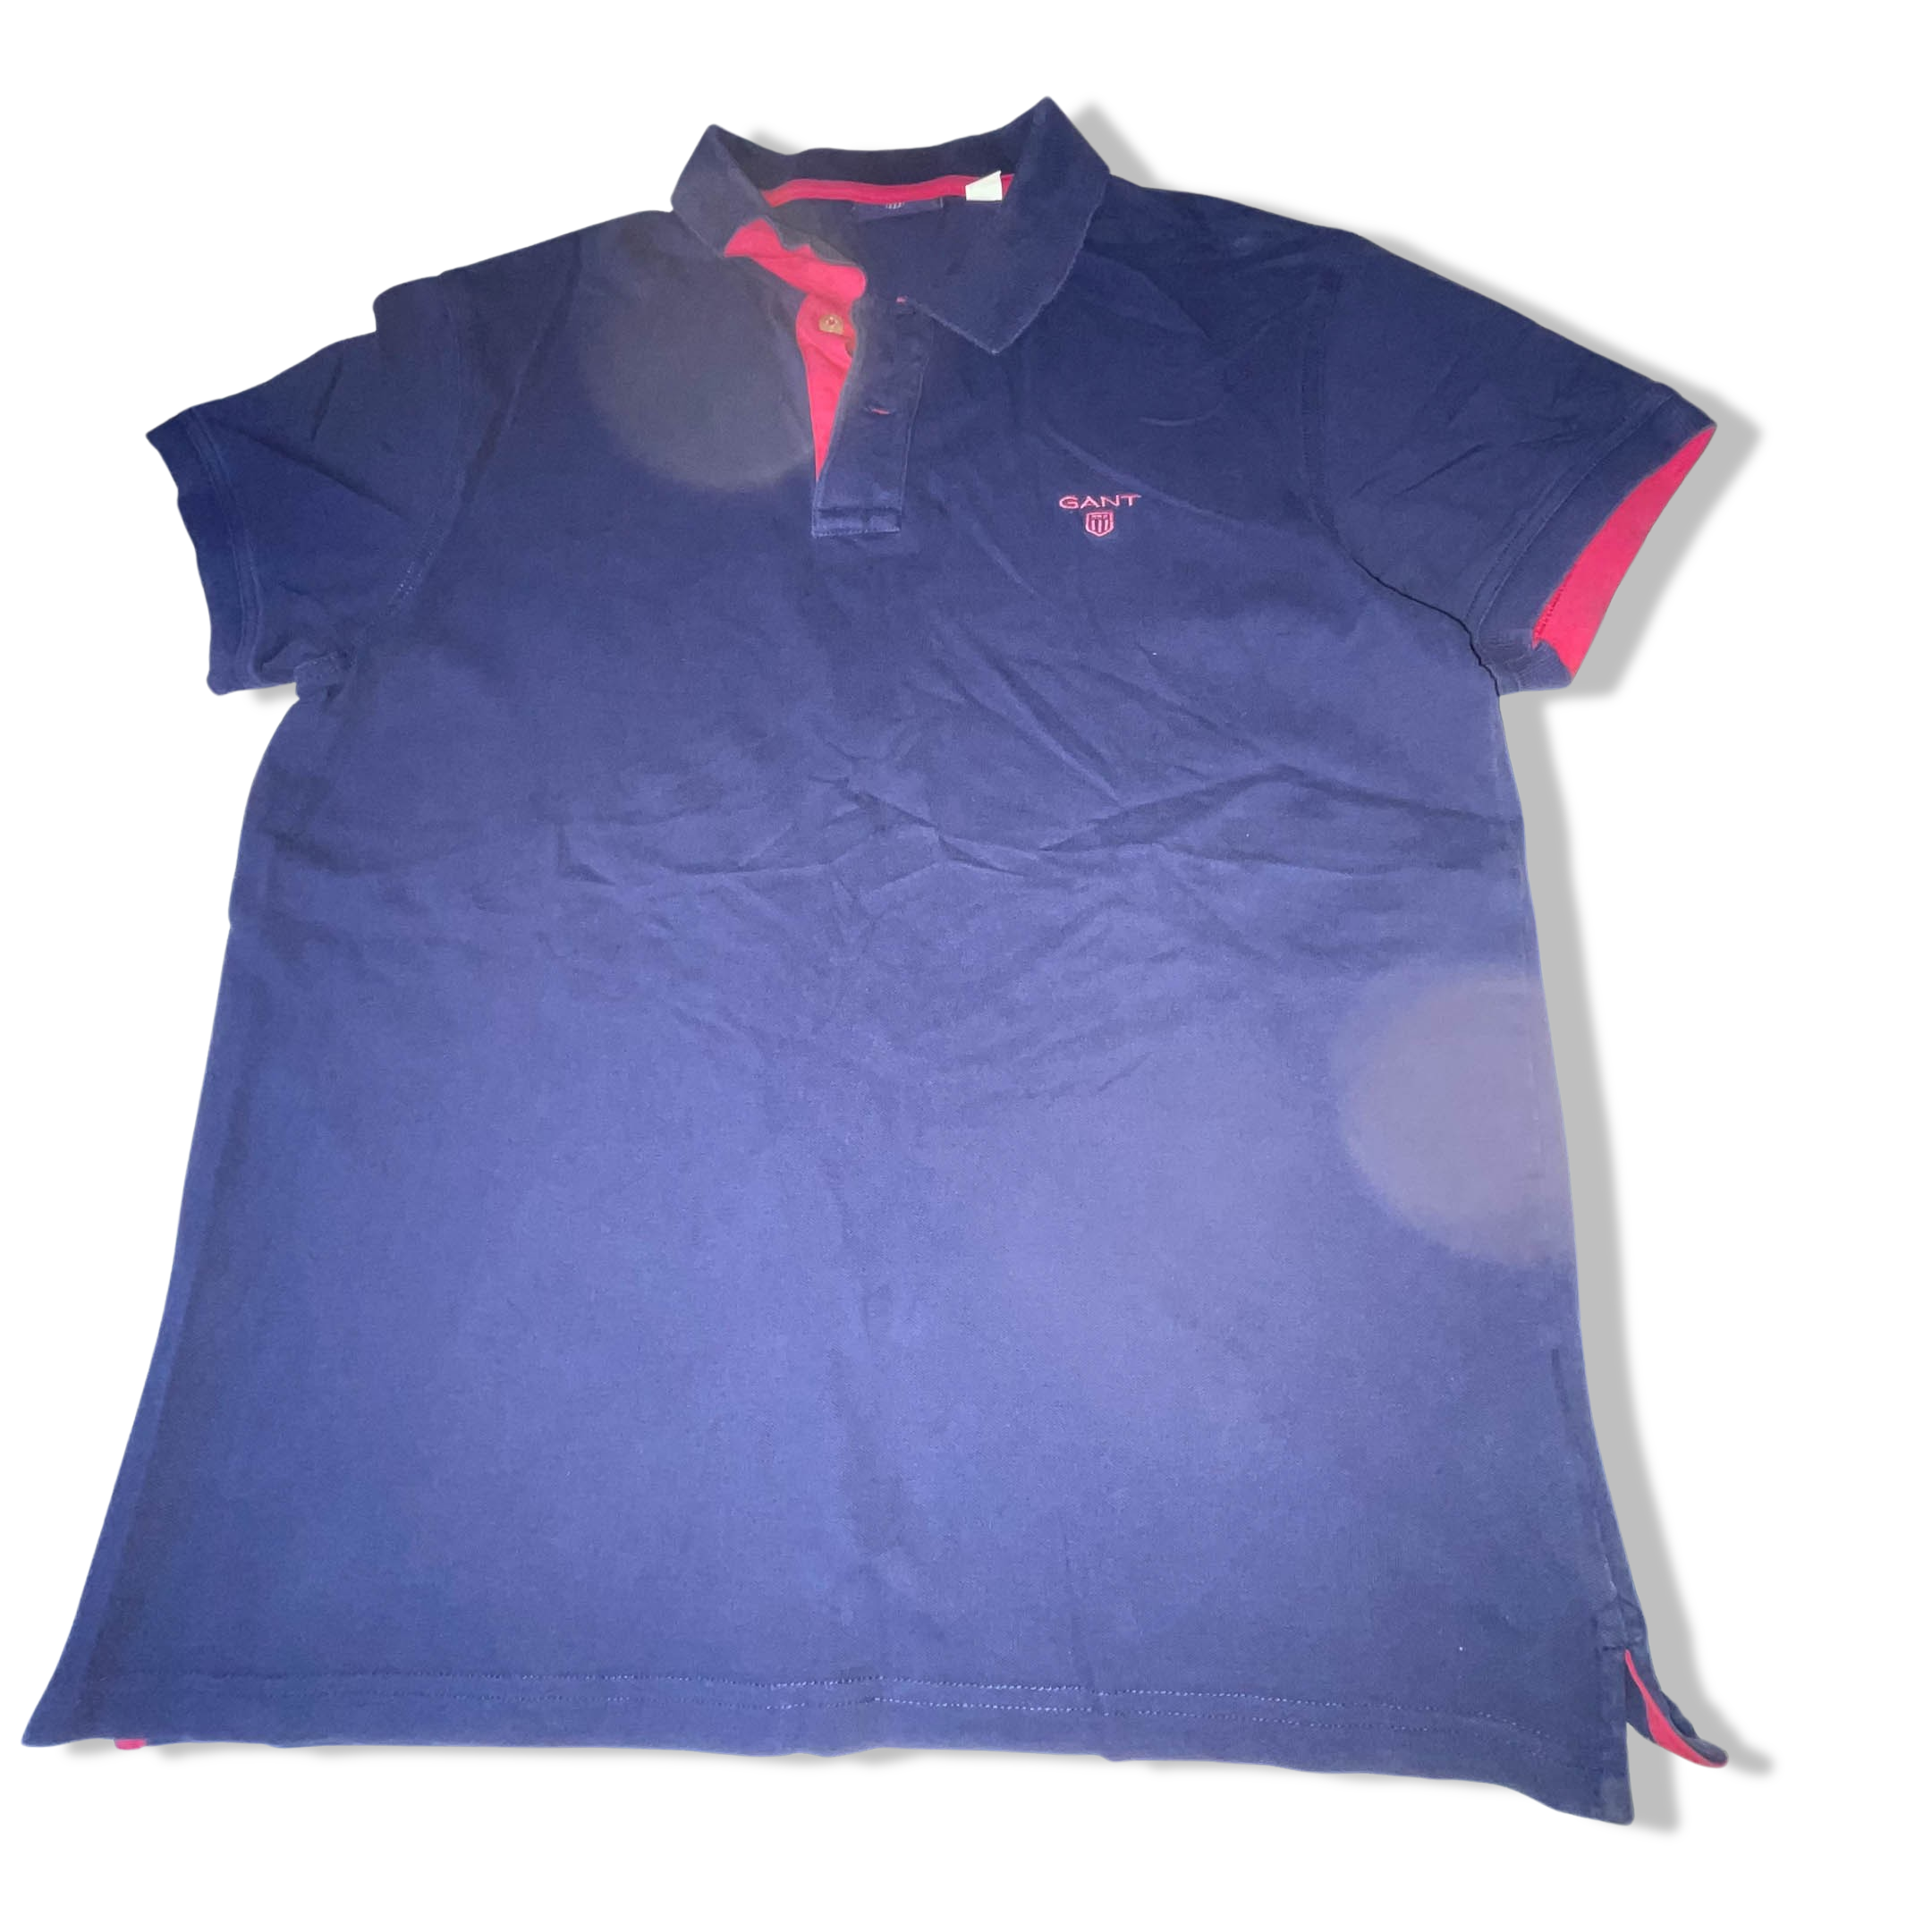 Vintage Navy Gant medium regular fit short sleeve polo shirt